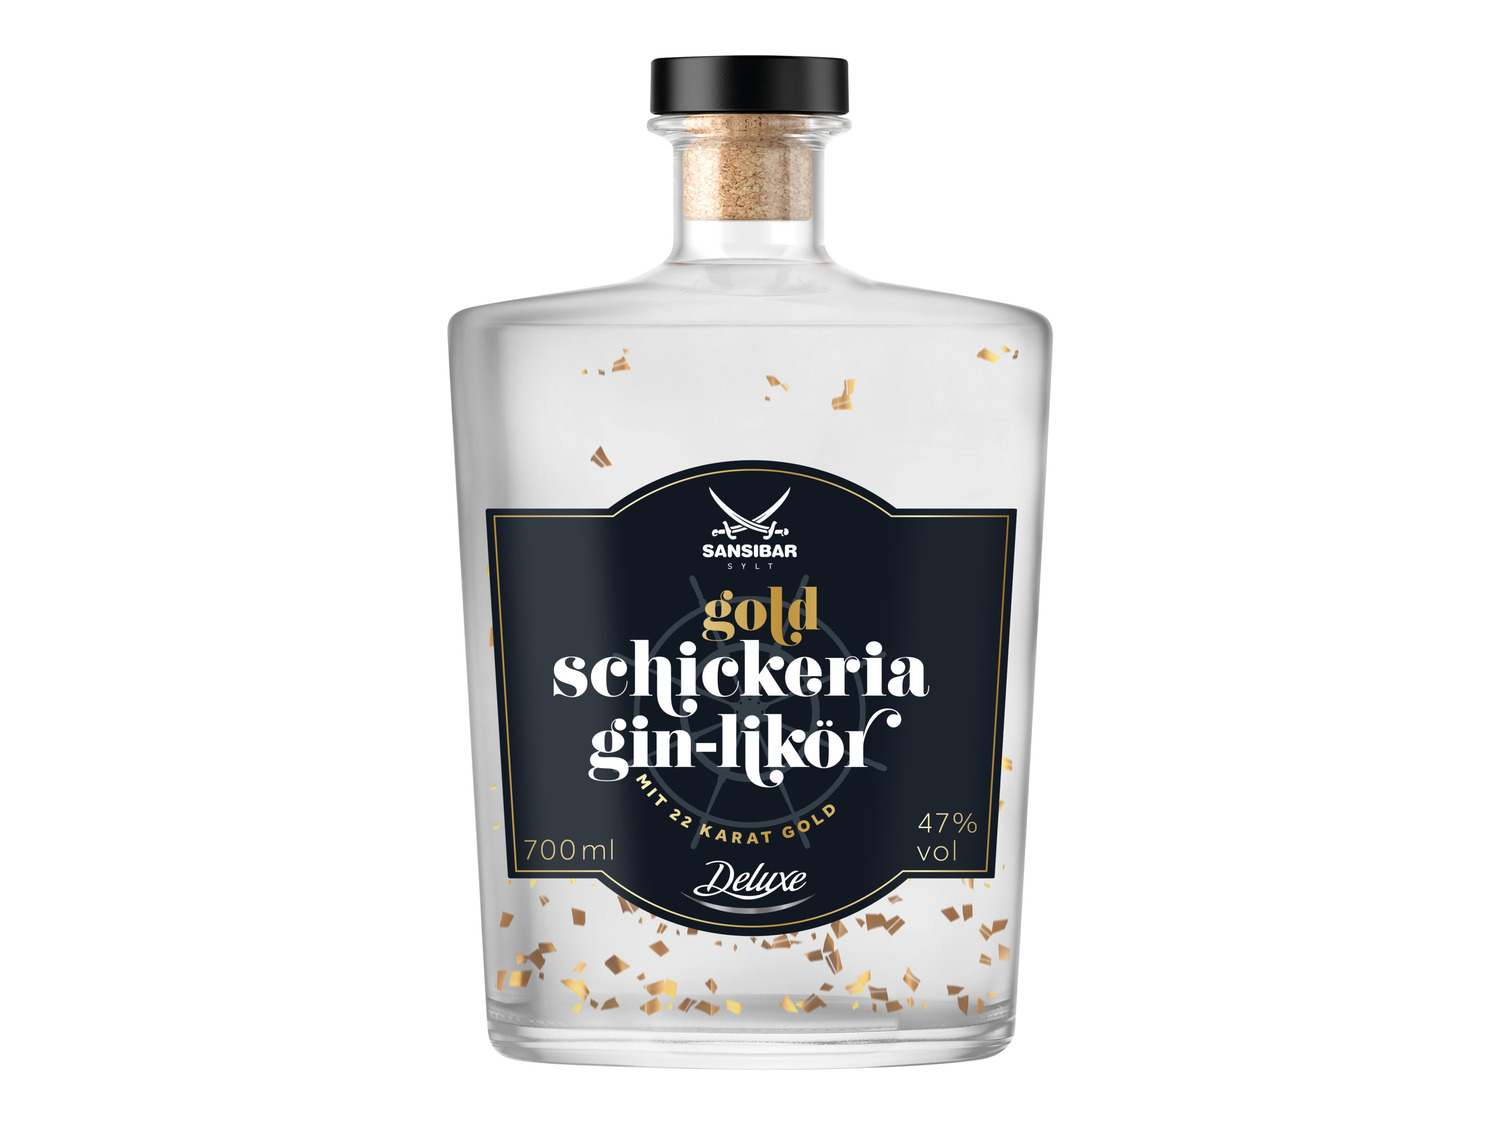 SANSIBAR Schickeria Gin-Likör mit Gold 47% Vol | LIDL